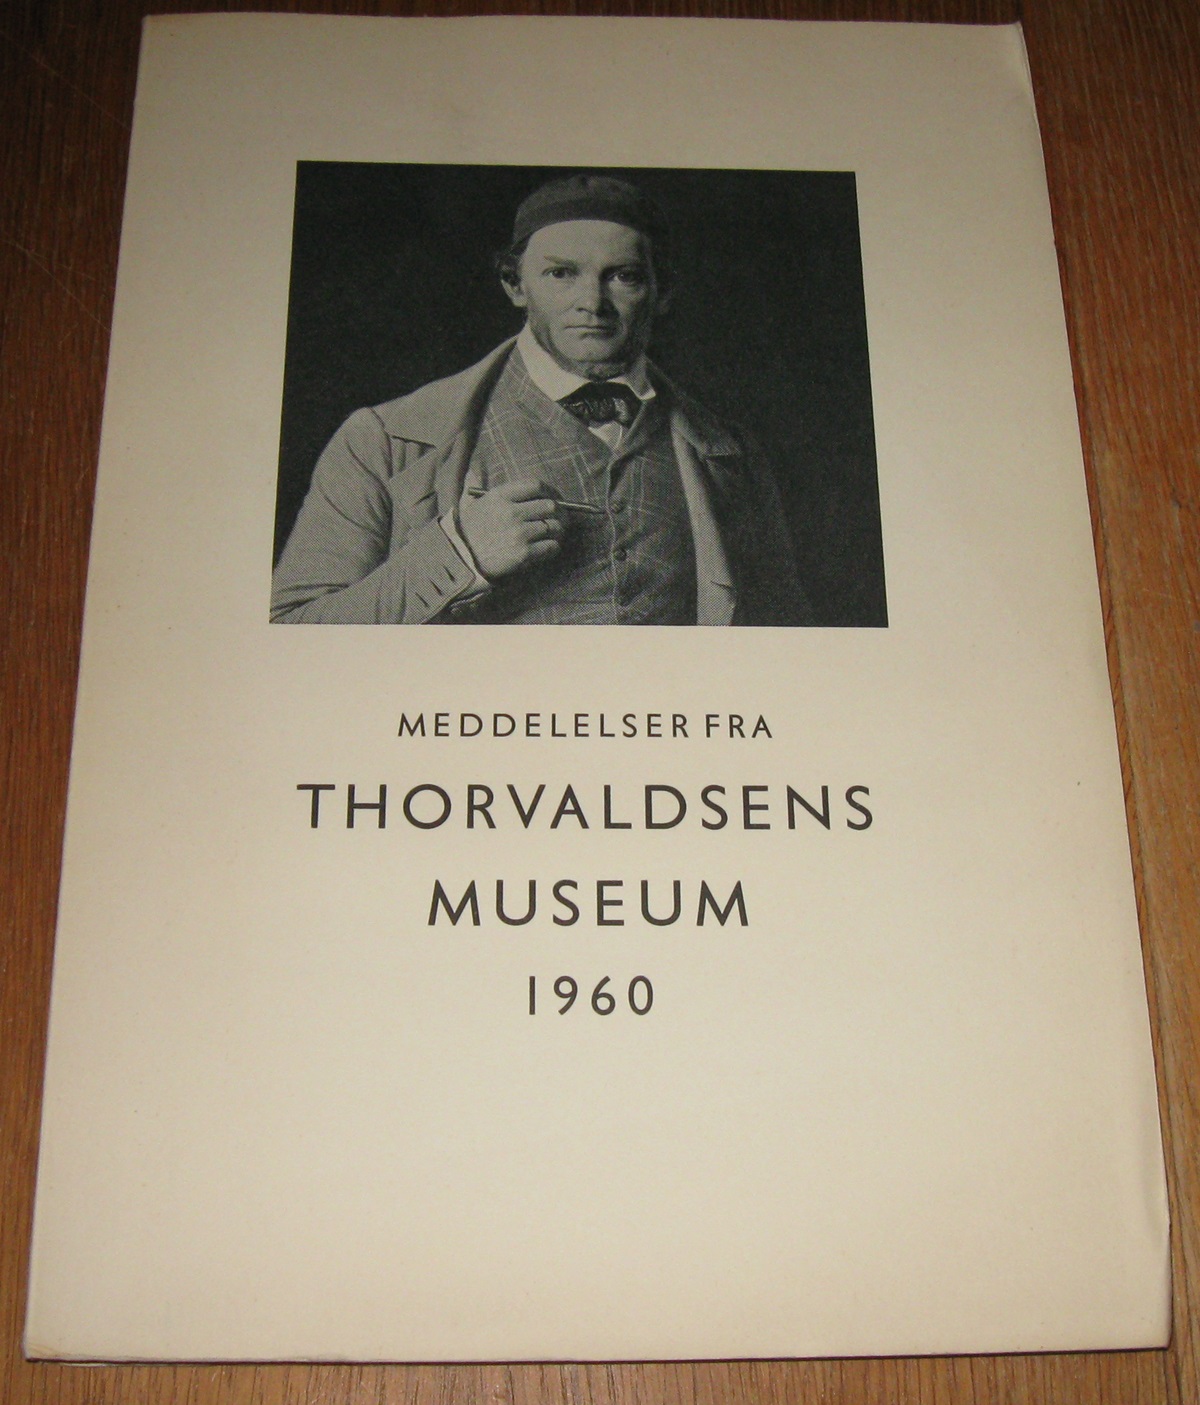 Meddelelser fra Thorvaldsens museum 1960